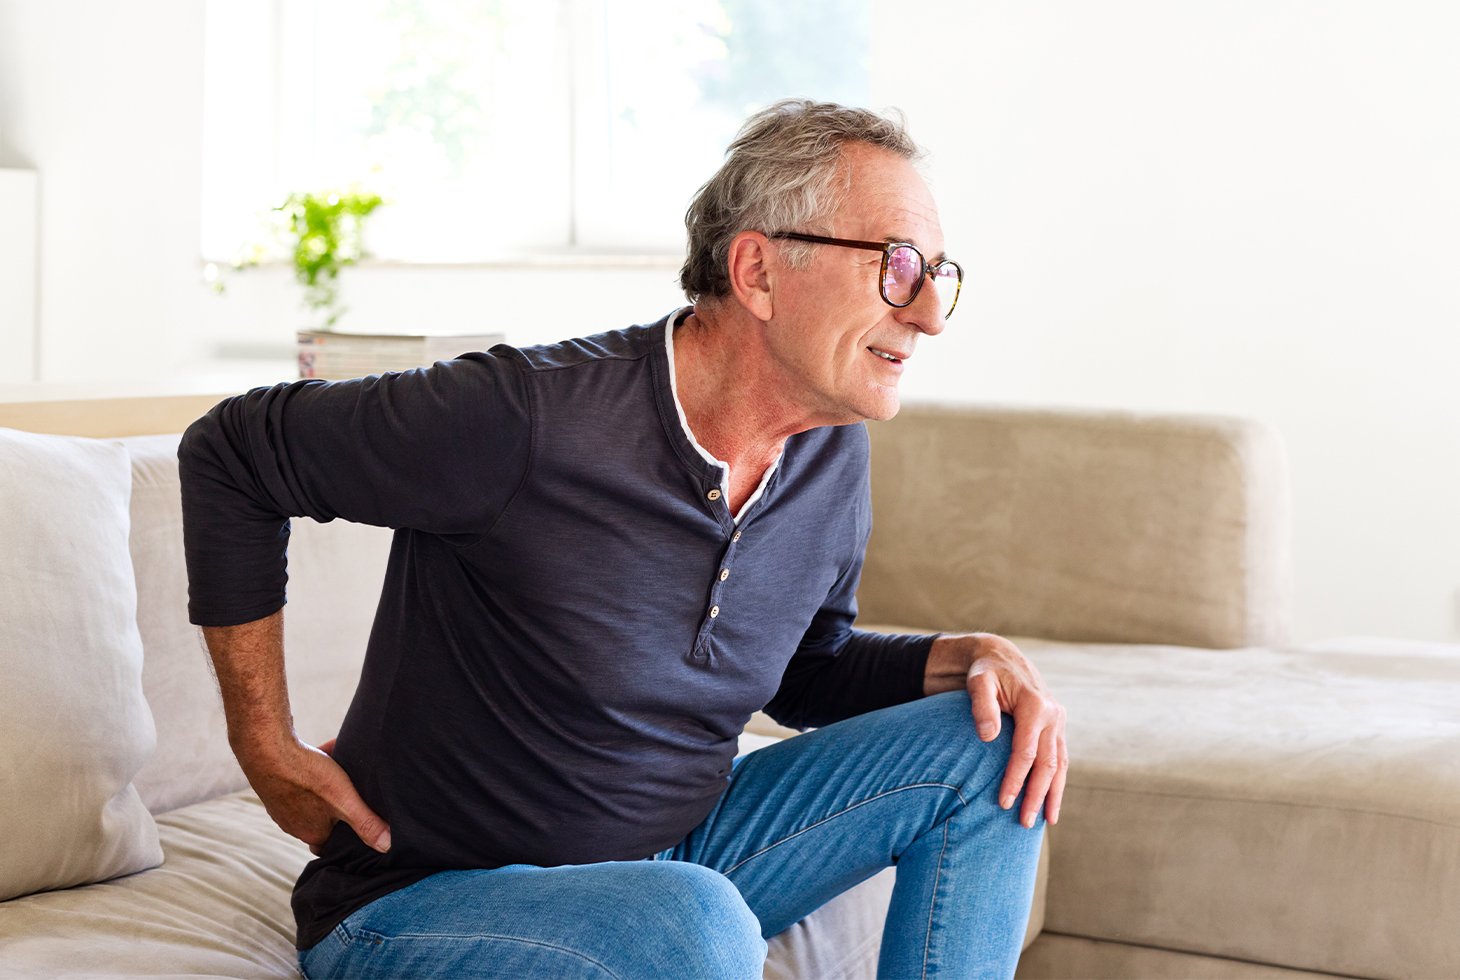 Un homme, assis sur un canapé, se tient le bas du dos. Visuel pour illustrer le risque d’incontinence urinaire liée à une affection chronique.